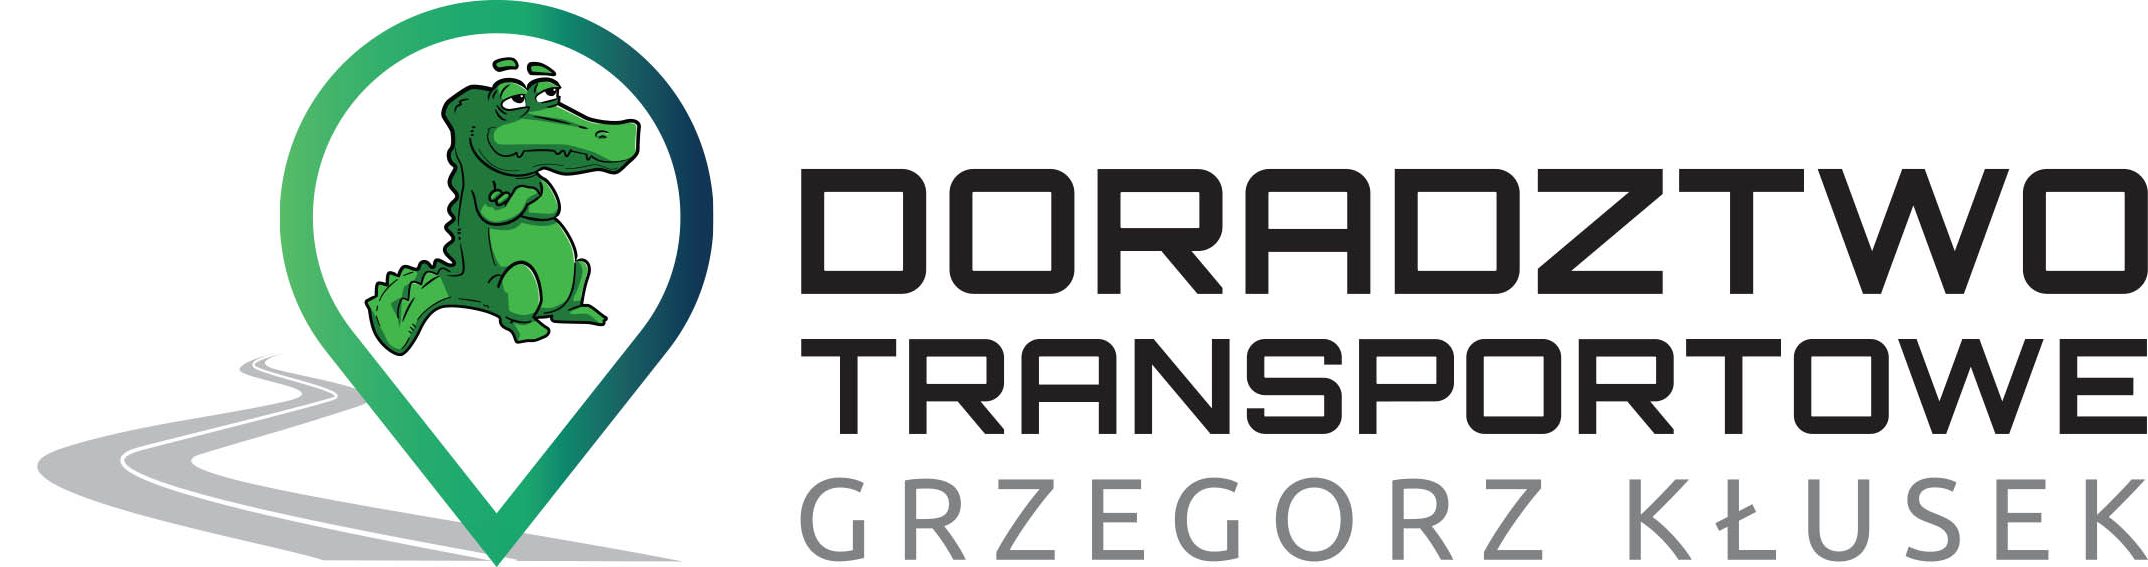 Doradztwo Transportowe Grzegorz Kłusek